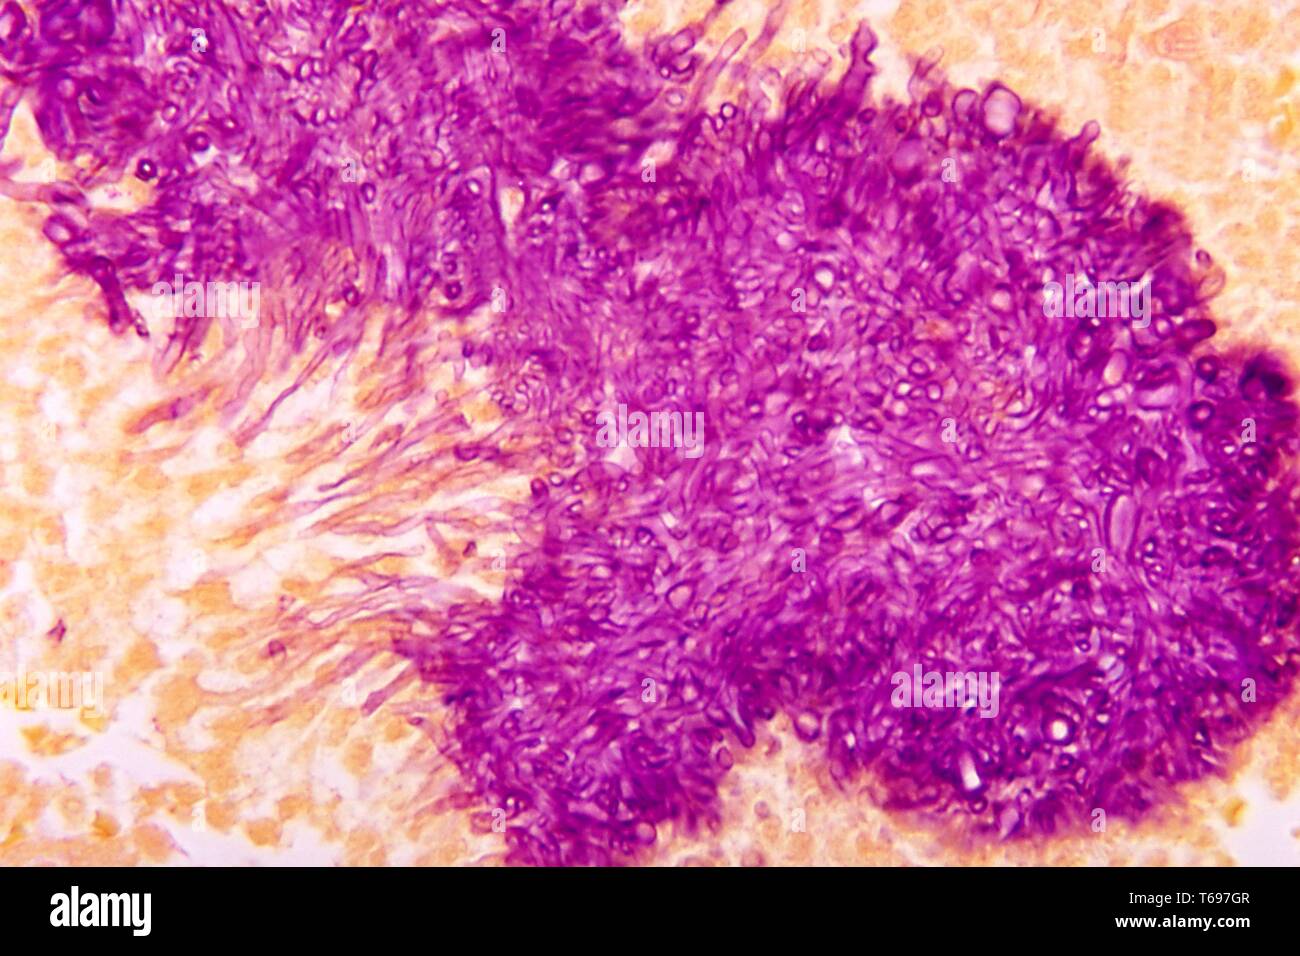 Macchia Gridley microfotografia dell'aspetto istopatologica del grano nero mycetoma causato dalla Madurella mycetomatis fungo, 1972. Immagine cortesia di centri per il controllo e la prevenzione delle malattie (CDC) / Dr Libero Ajello. () Foto Stock